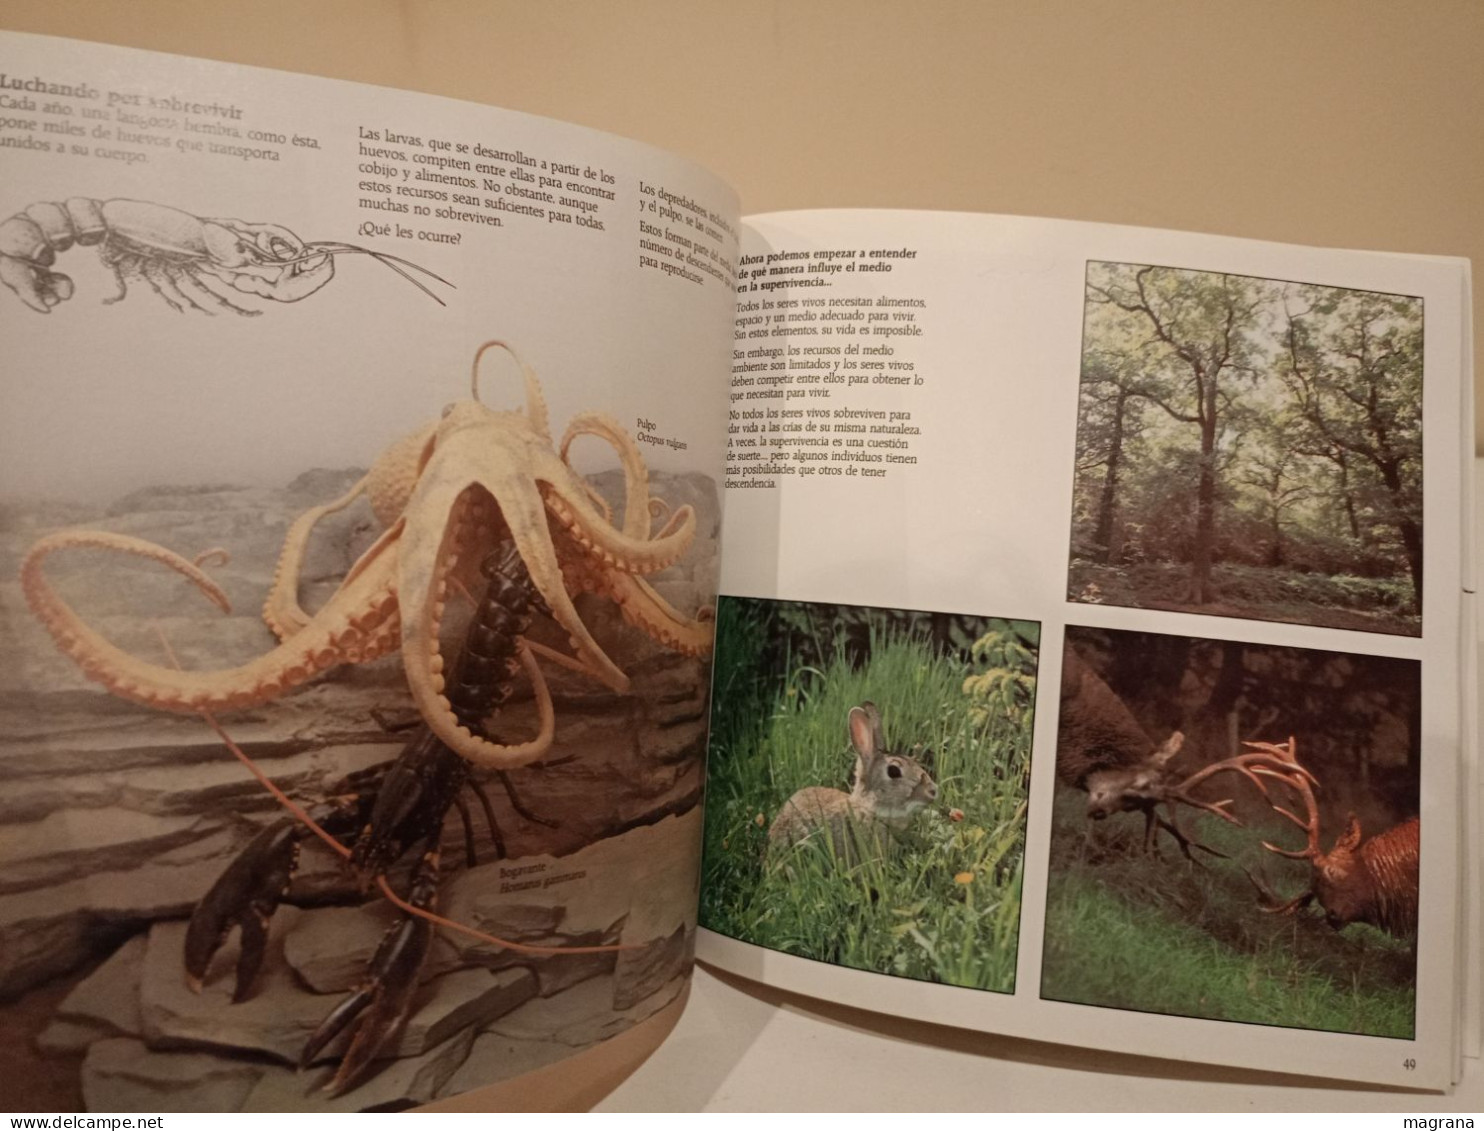 El origen de las especies. British Museum (Natural History). Akal ediciones. 1992. 120 páginas.